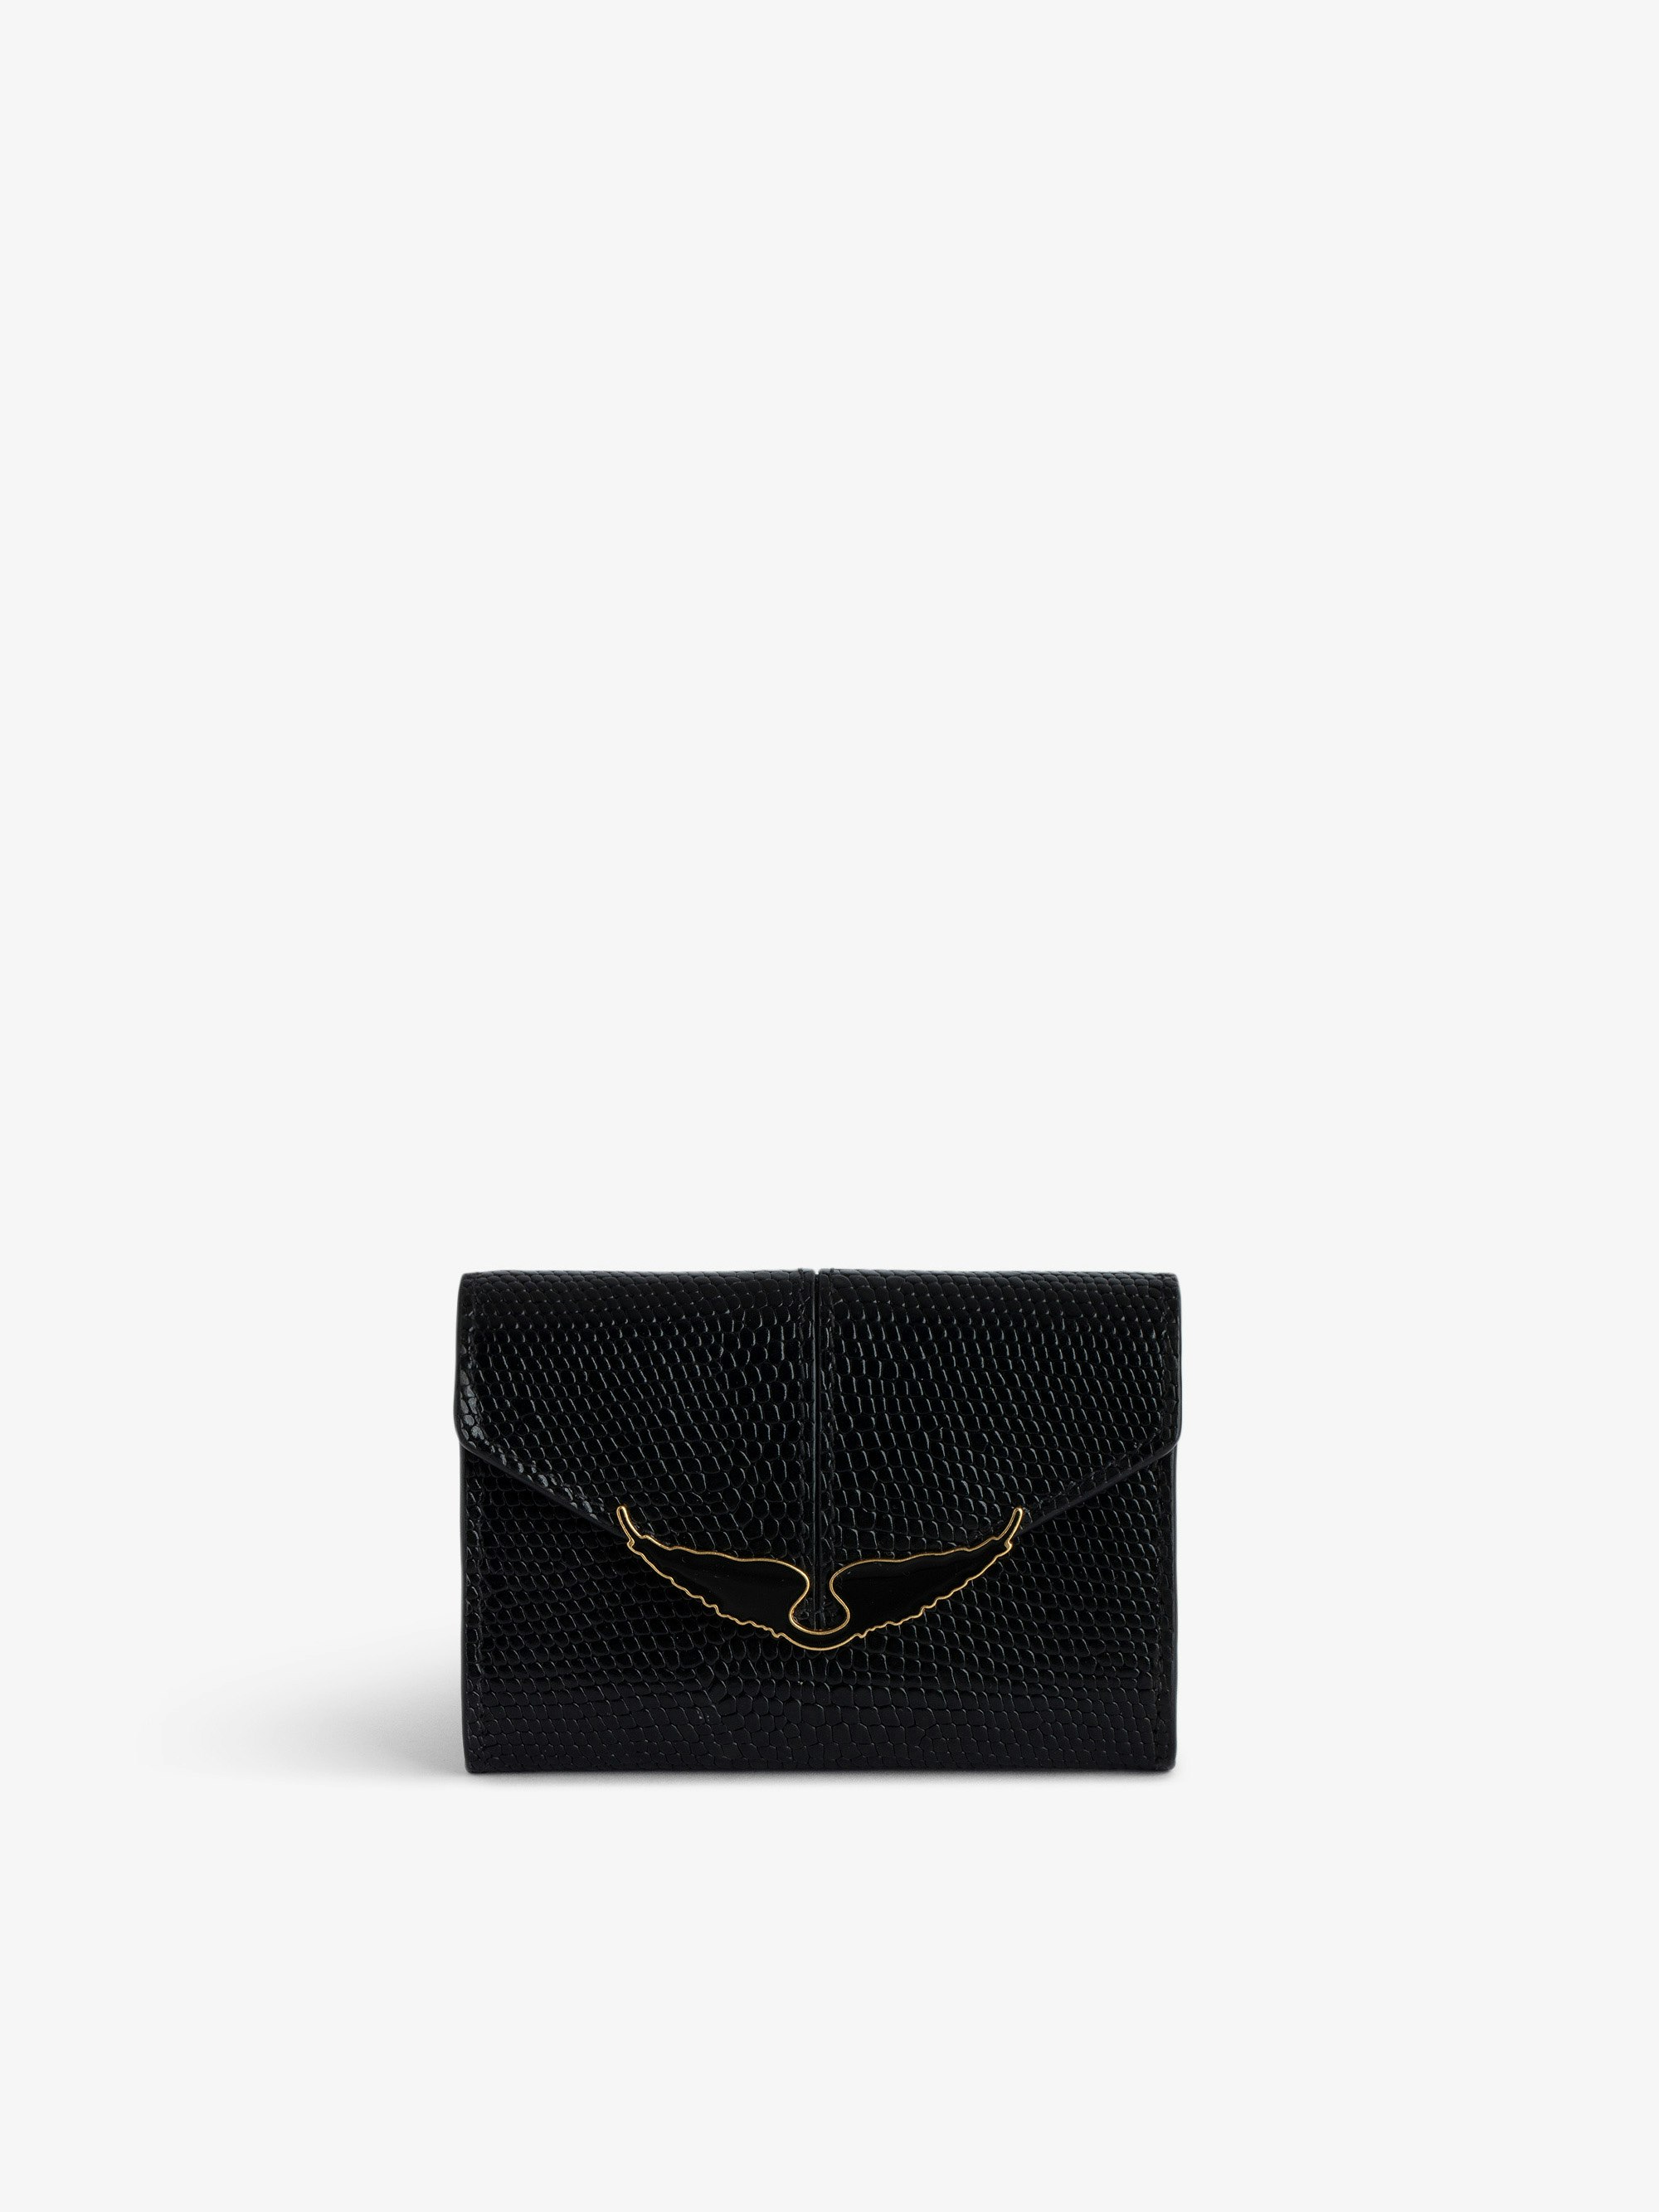 Brieftasche Borderline Geprägt - Kleine Brieftasche aus schwarzem Leder mit Leguan-Prägung mit Klappe.